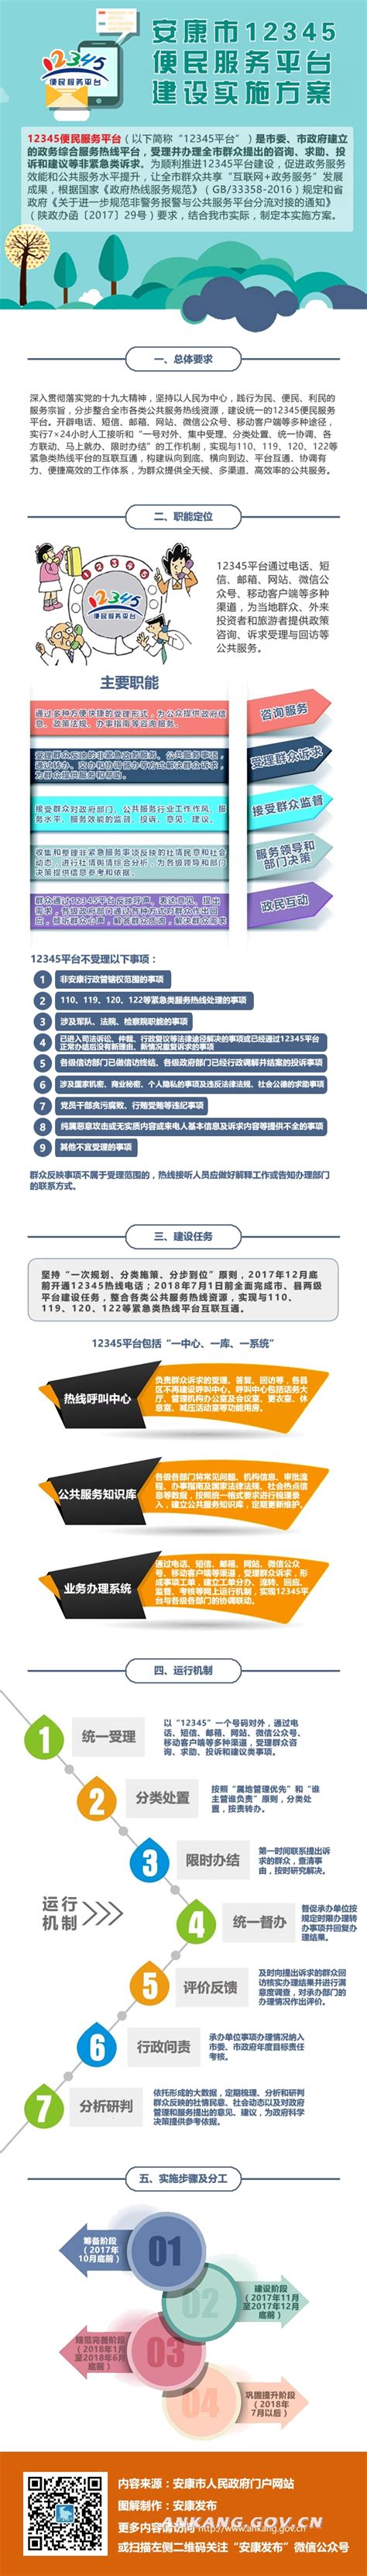 安康市在探索应用“陕西教育扶智平台”中获得教育部示范案例推广